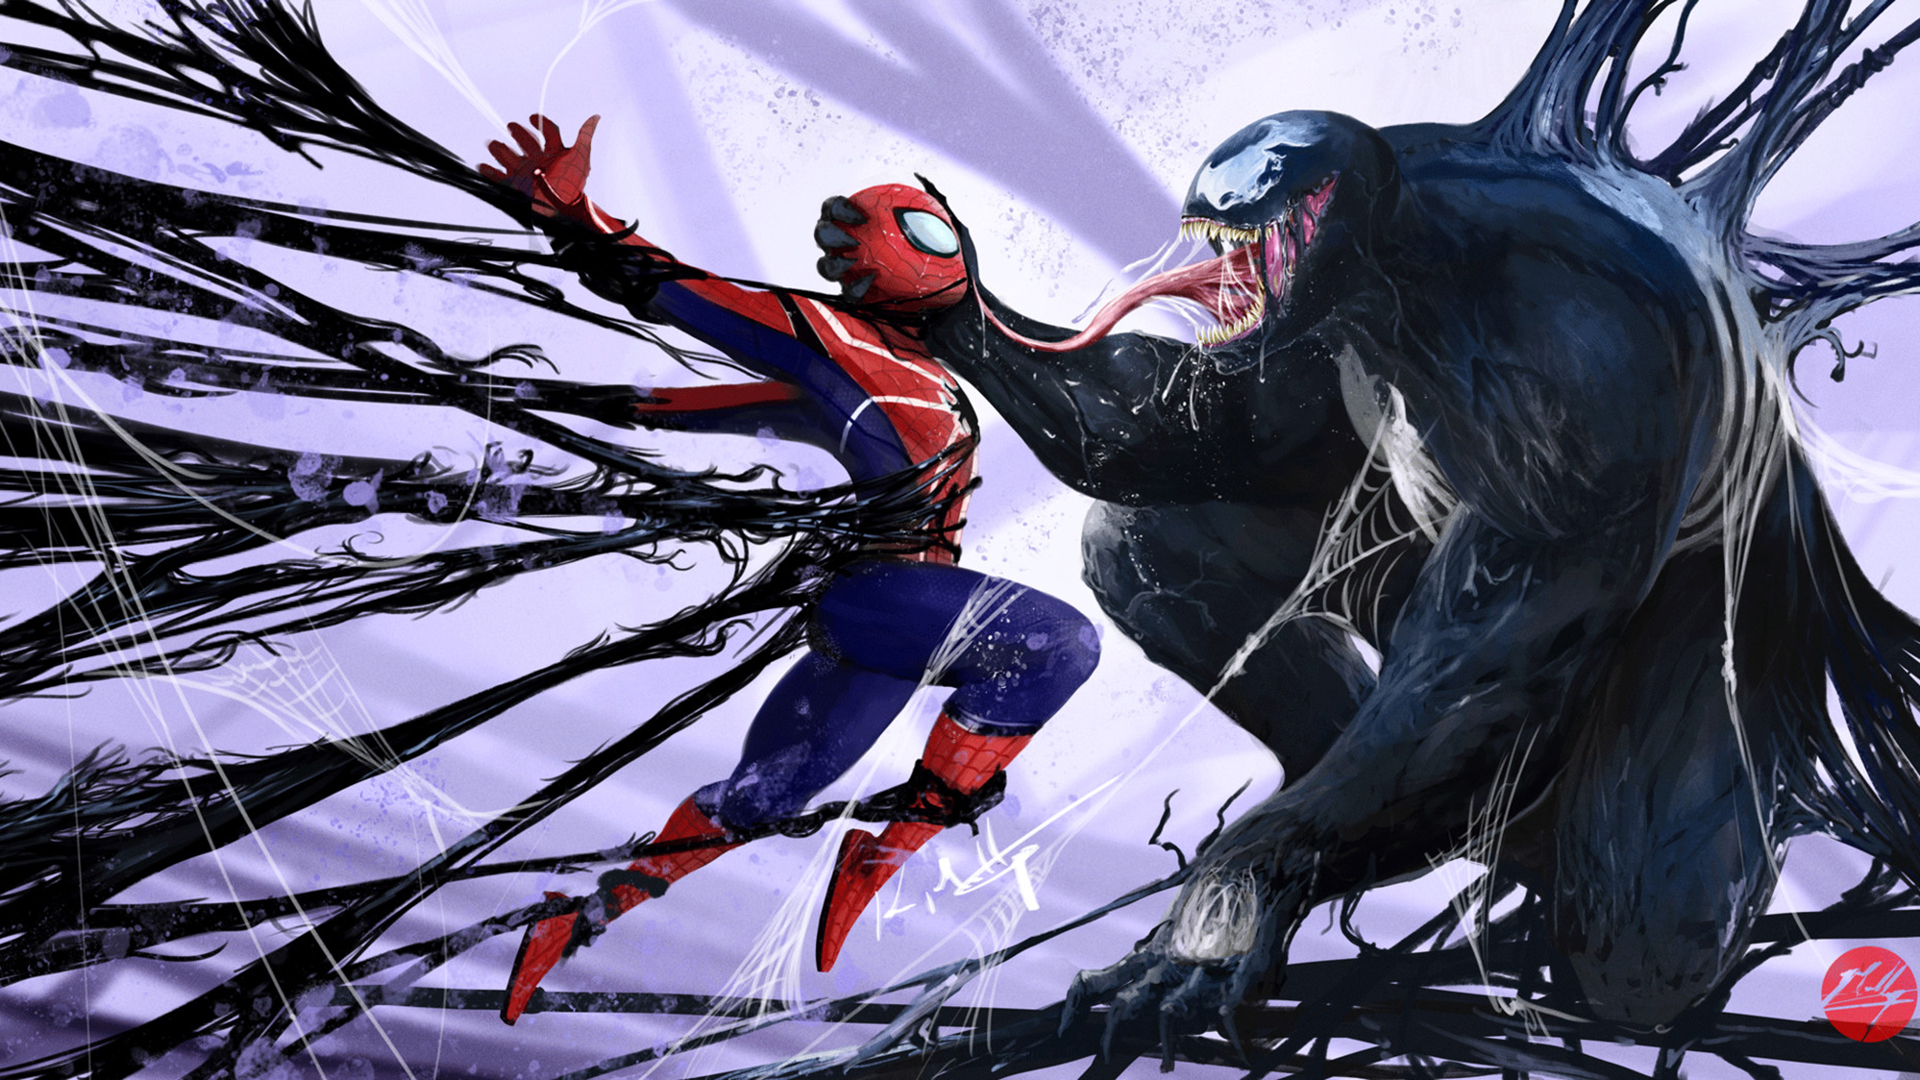 Spider-Man vs Venom Wallpapers